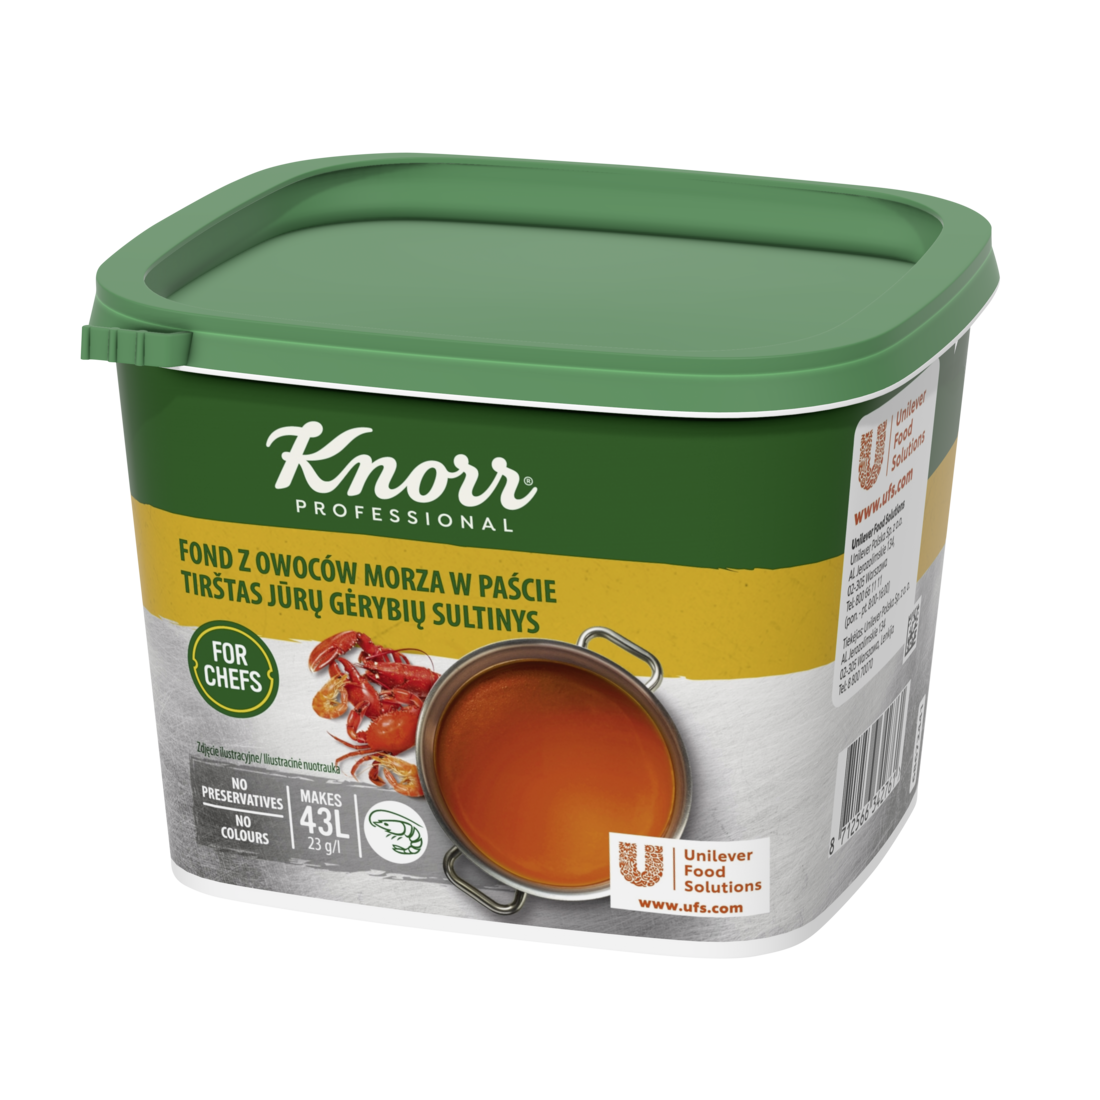 Knorr Jūros Gėrybių Sultinio Pasta 1 kg - 